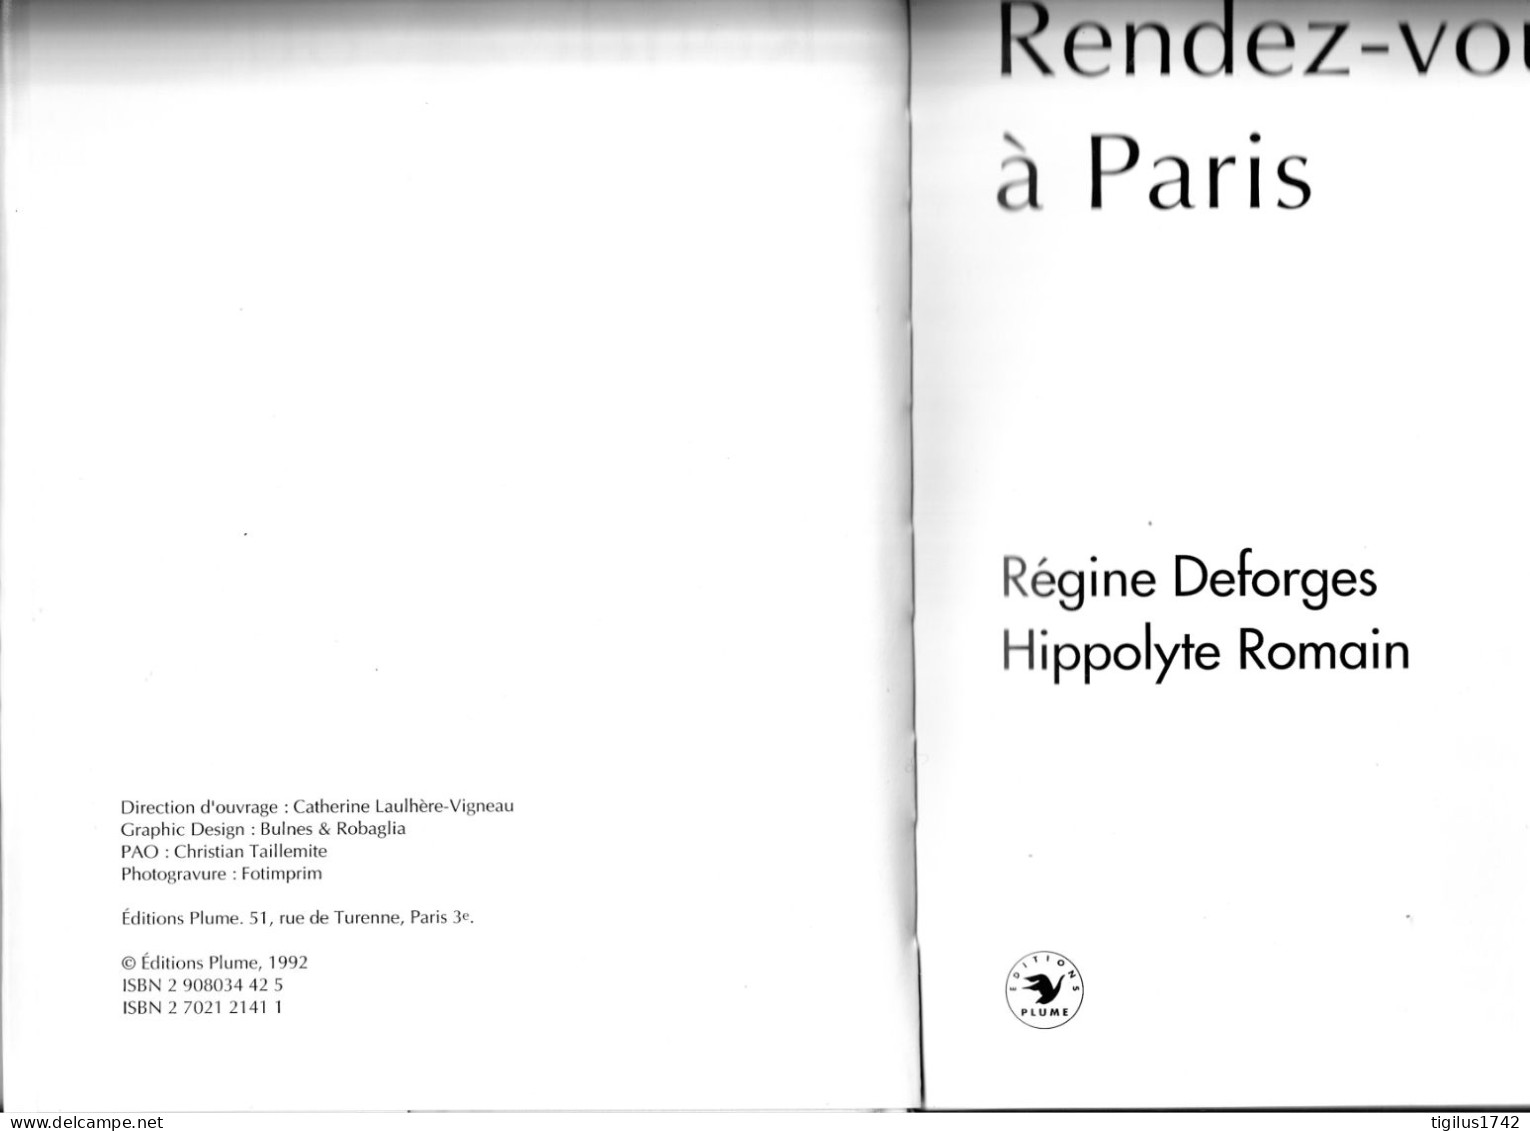 Régine Desforges, Hippolyte Romain, 1992. Rendez-vous à Paris. Ed. Plume - French Authors